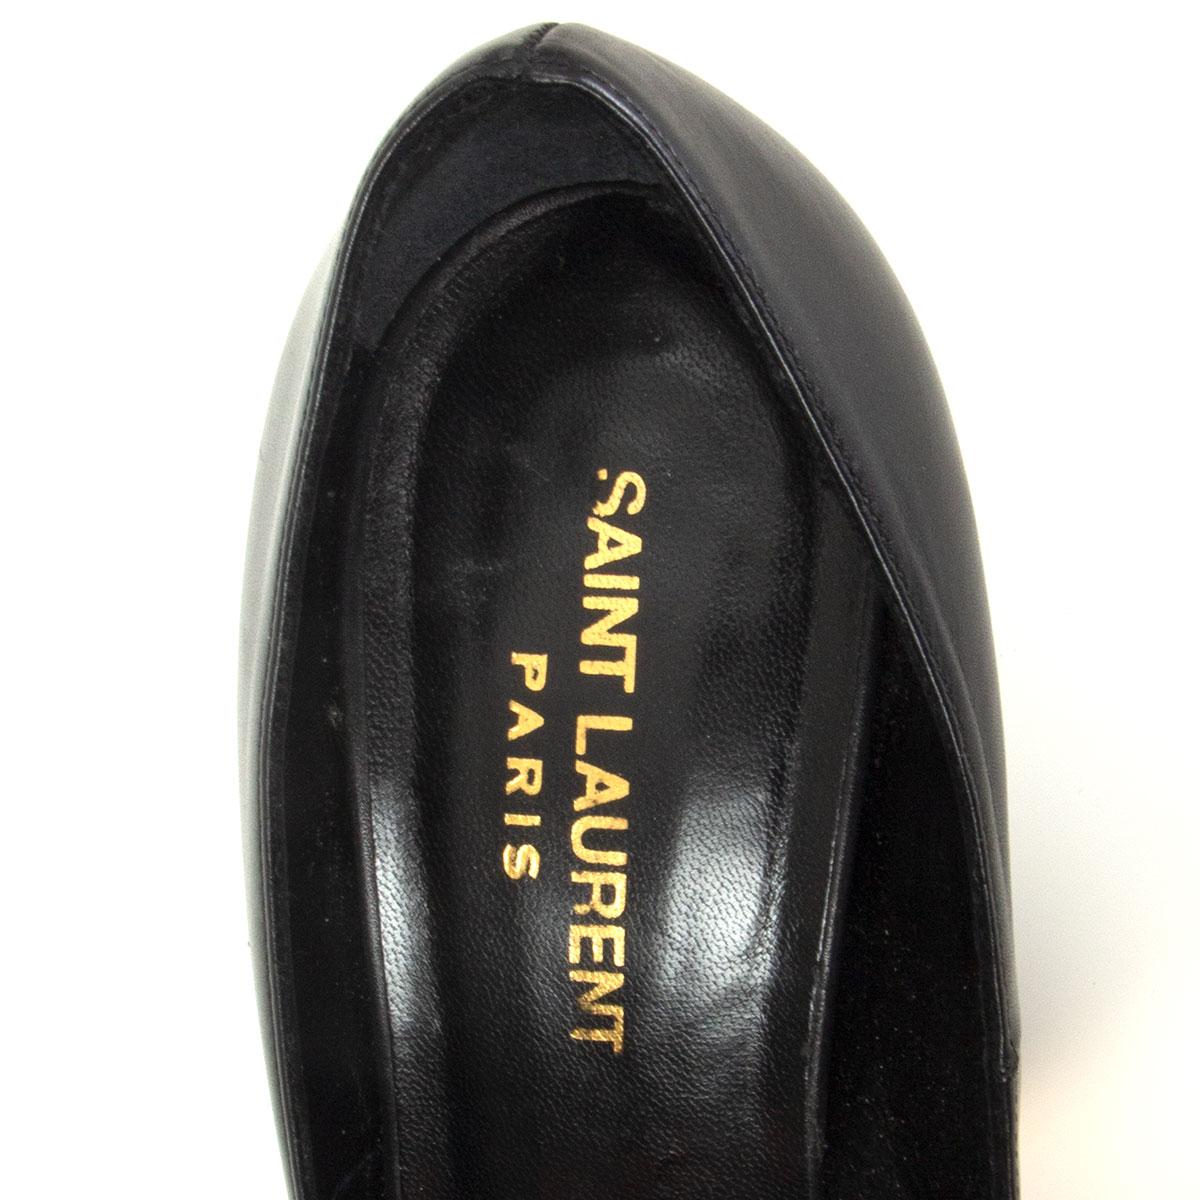 SAINT LAURENT black leather ZIGGY 105 Platform Pumps Shoes 38 1